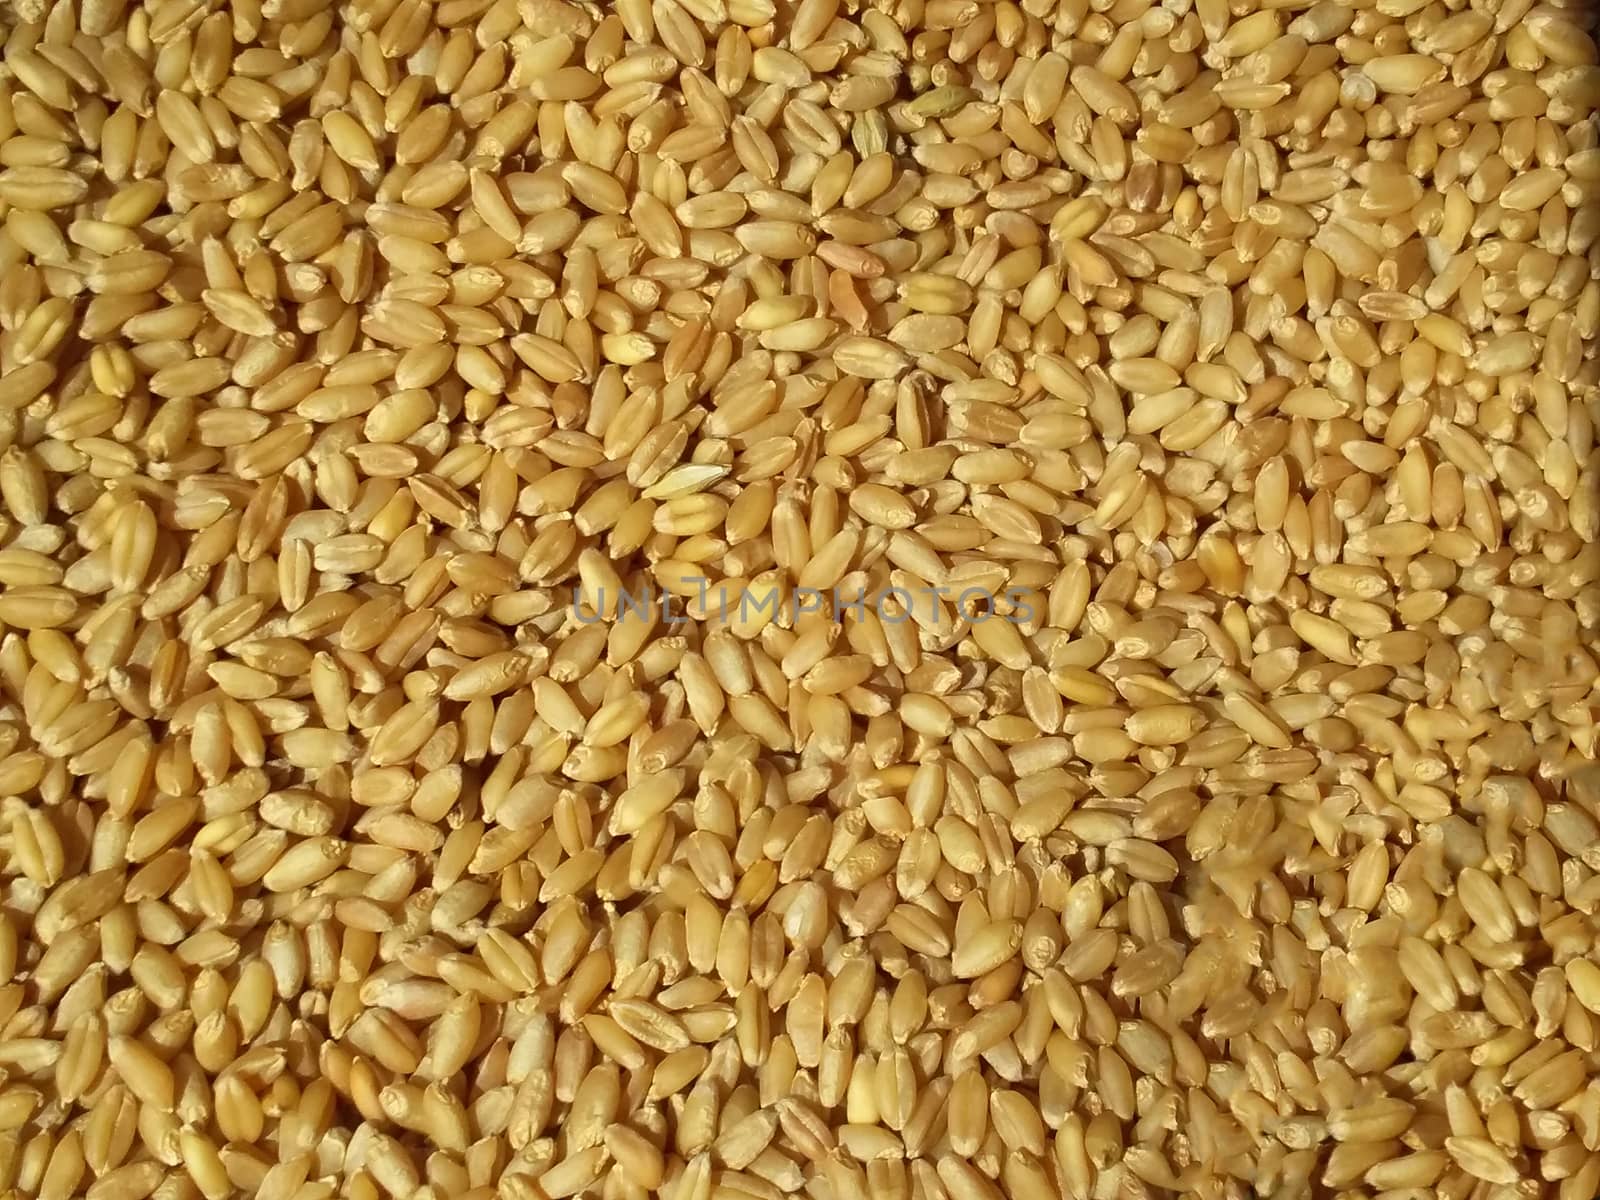 the fresh wheat grain